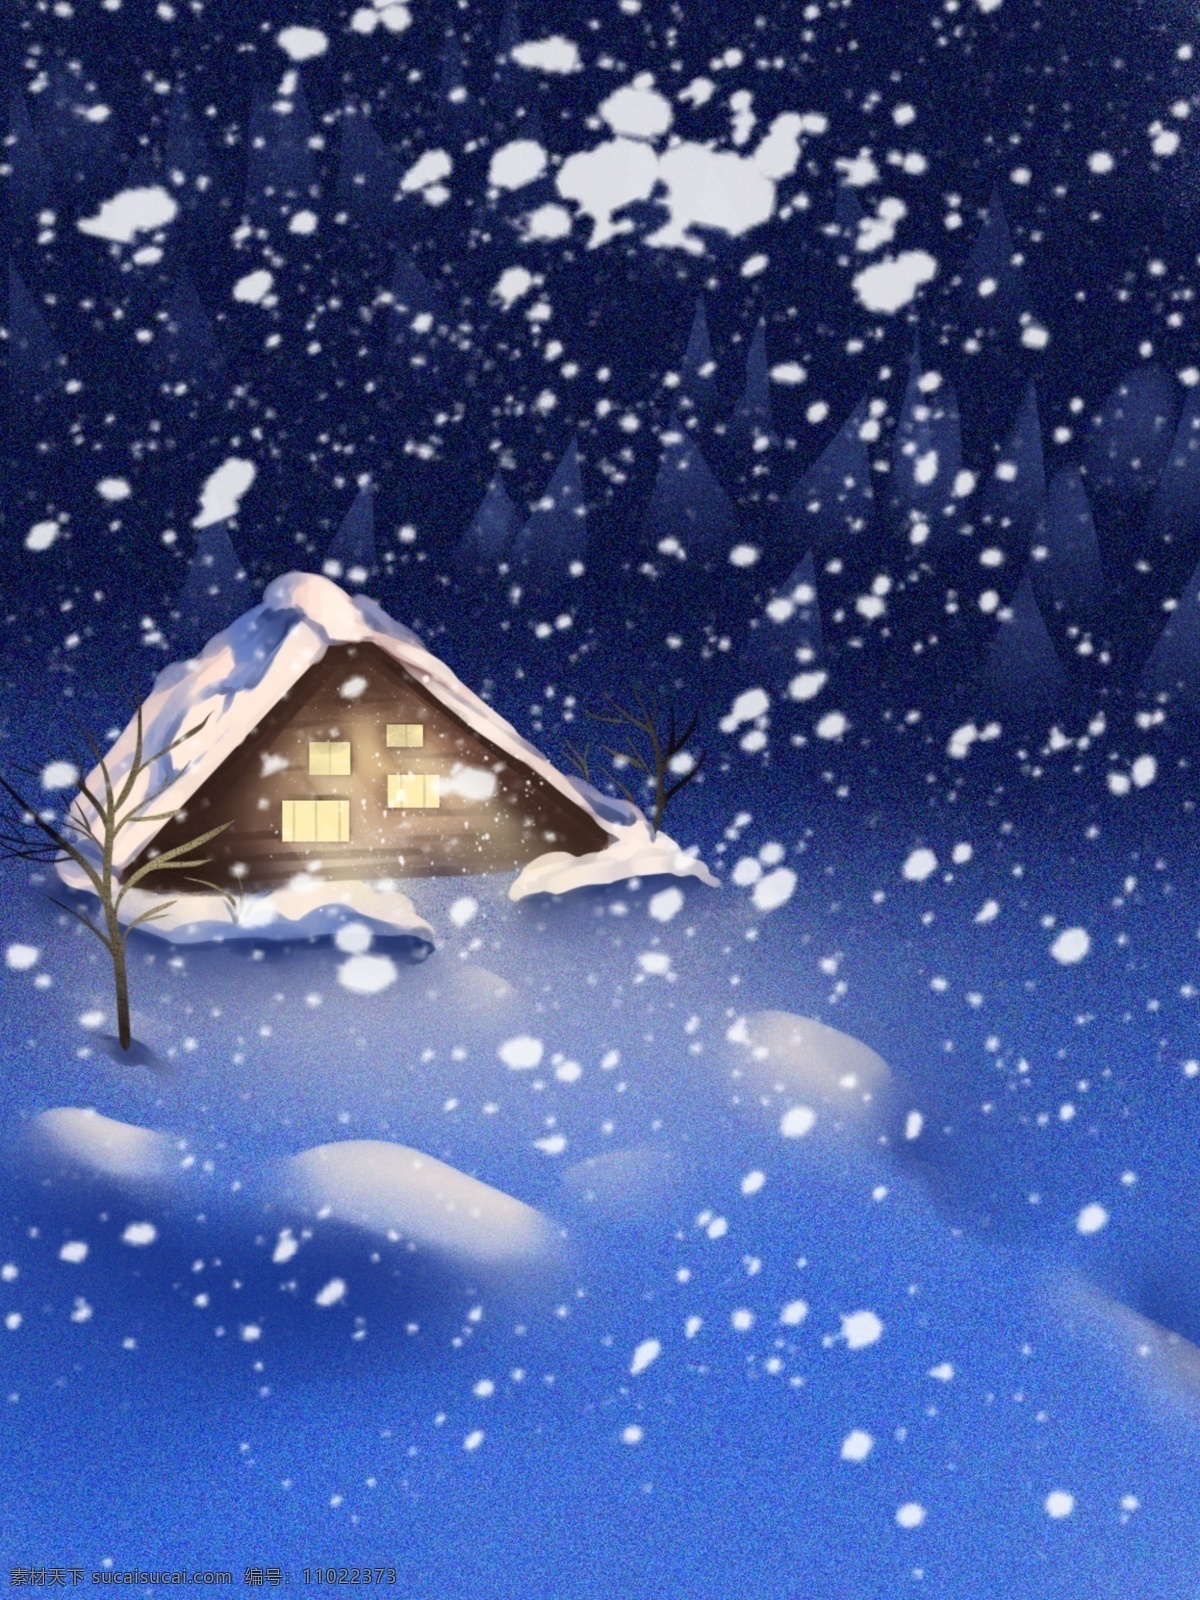 全 原创 手绘 冬季 夜晚 插画 唯美 背景 雪地 房屋 光 插画美景背景